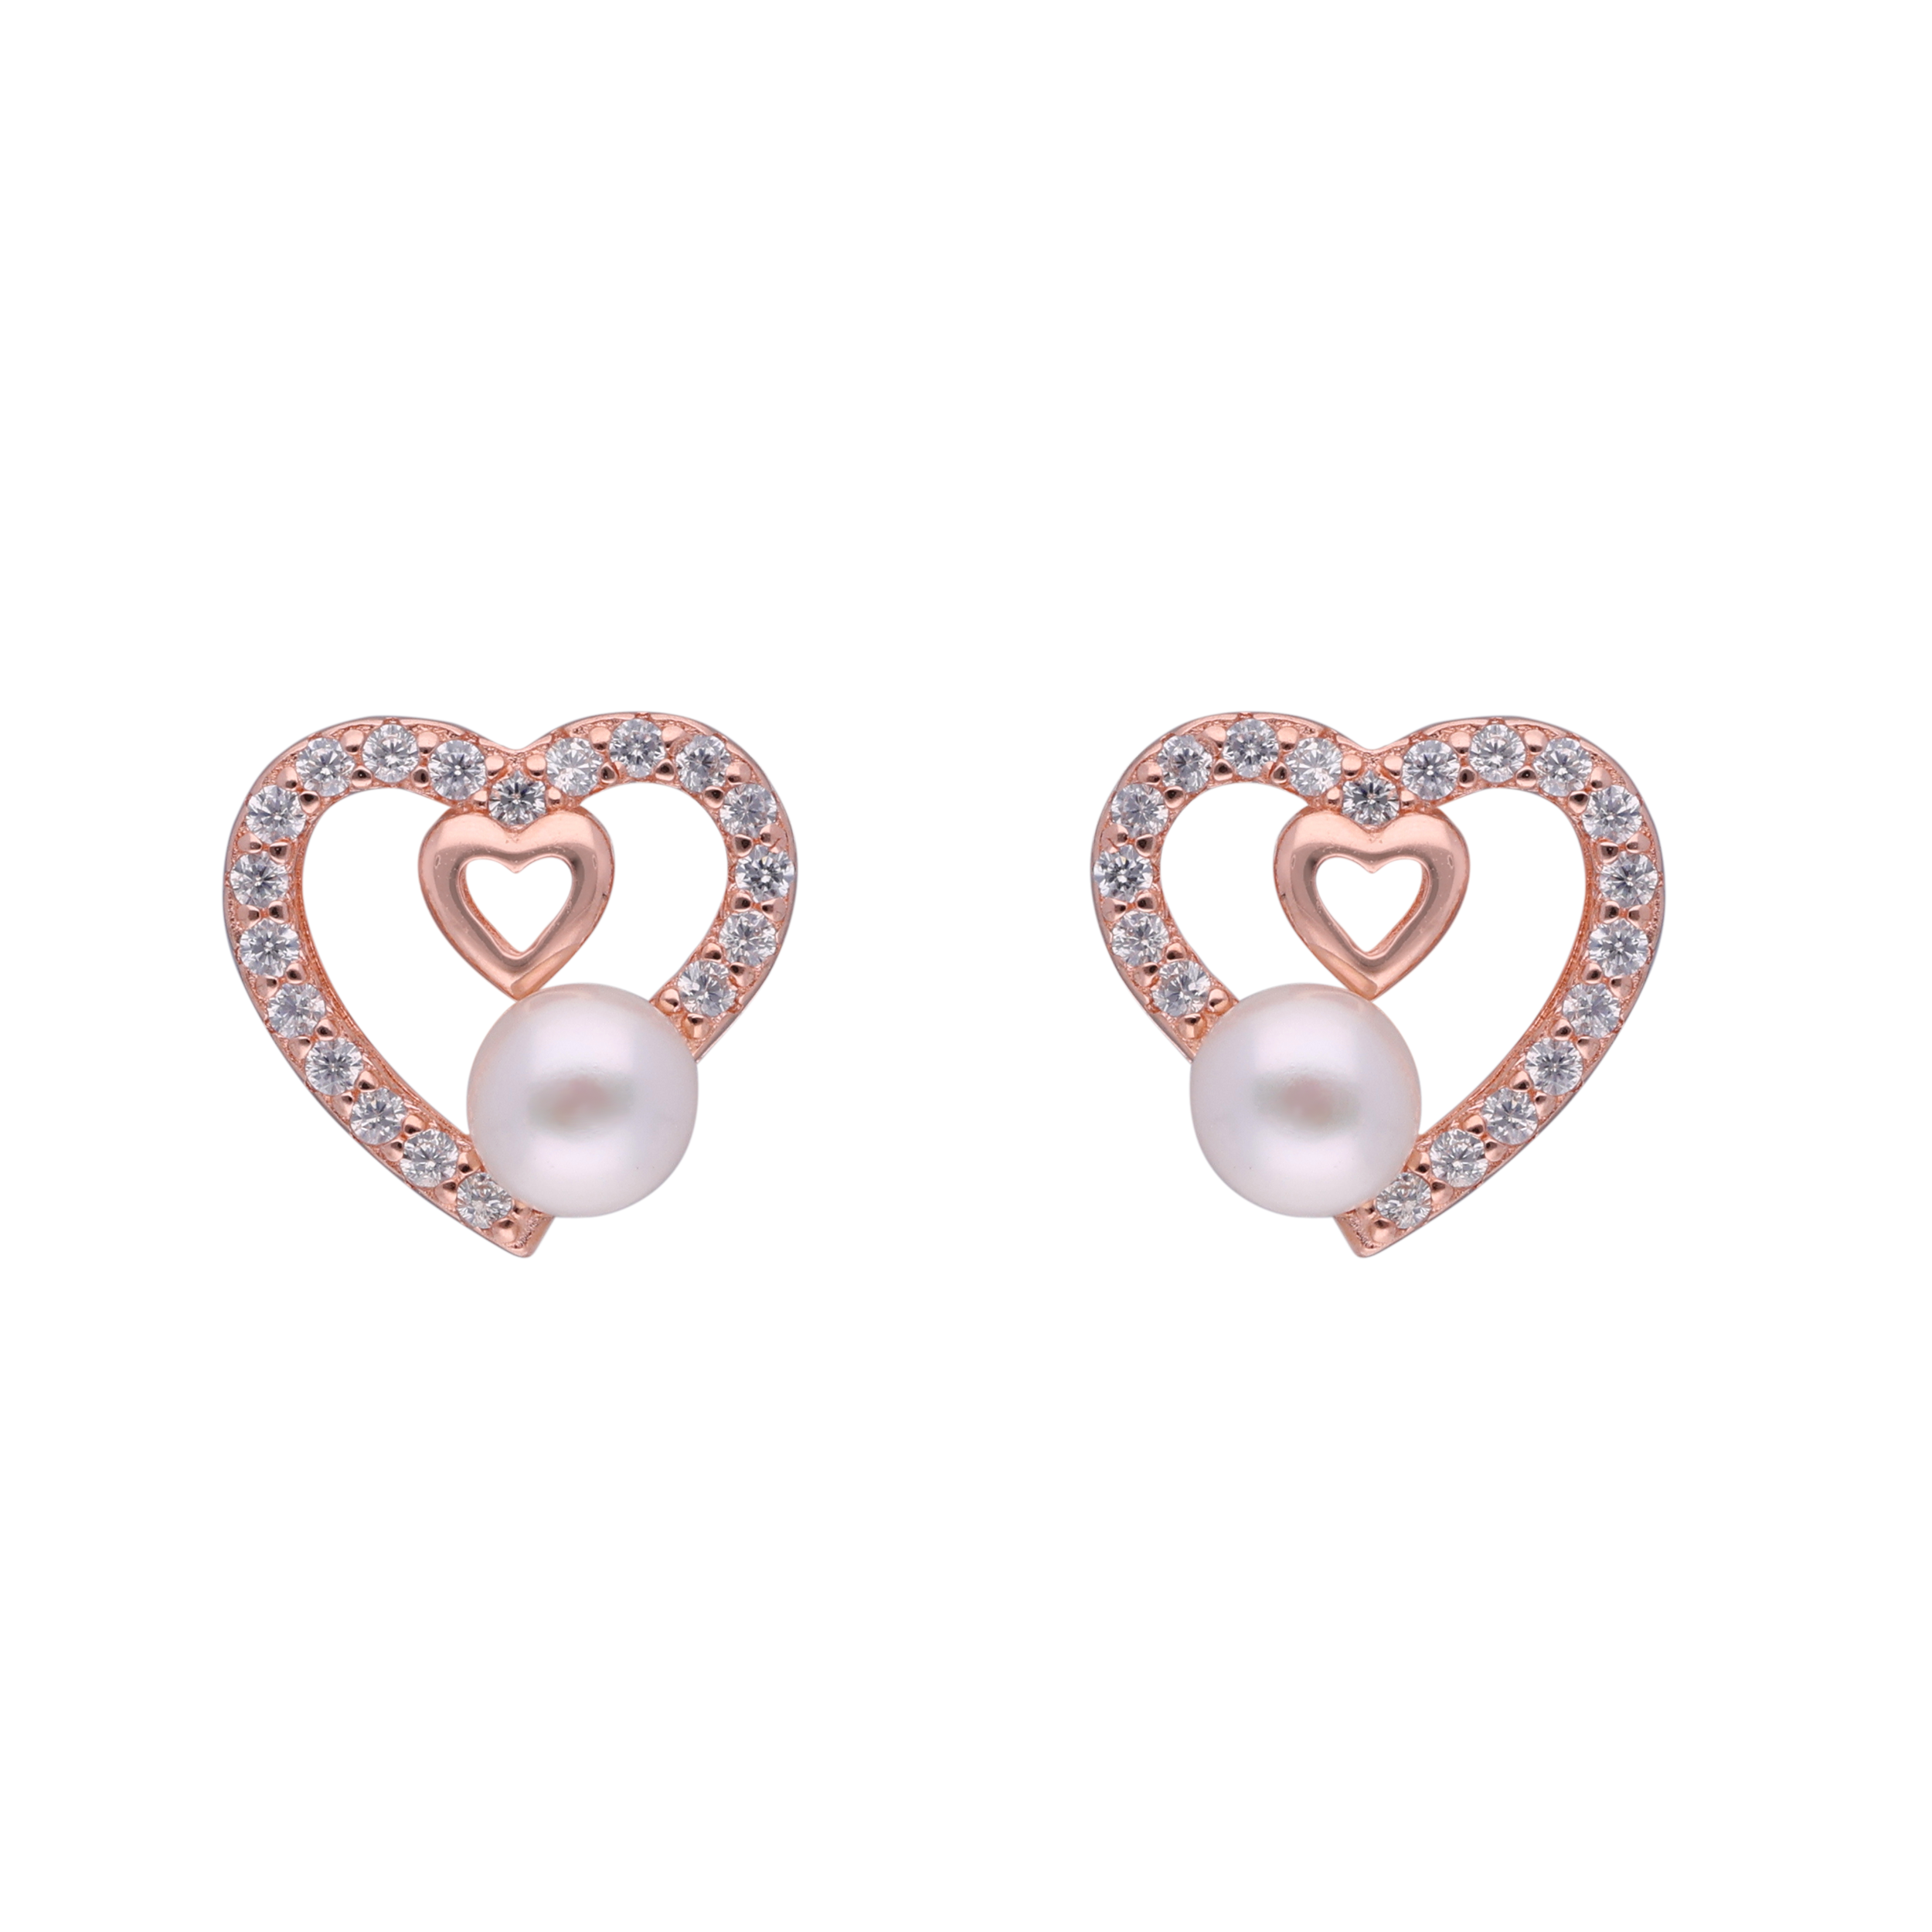 Love Blossom Earrings | SKU: 0002930077, 0002930015, 0019202624